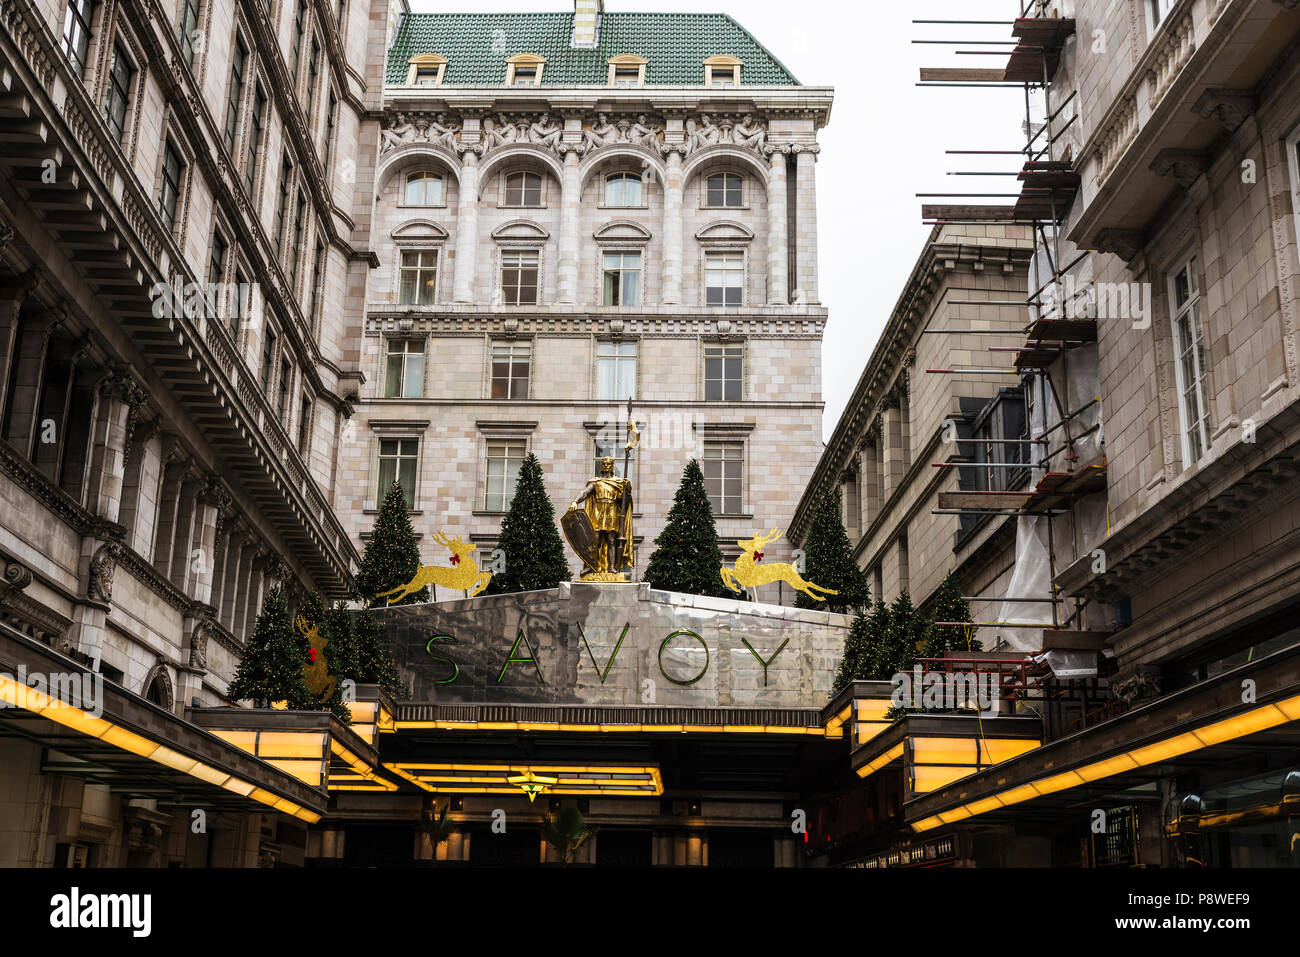 Londres, Reino Unido - 1 de enero de 2017: Fachada del Hotel Savoy con decoración de Navidad en Londres, Inglaterra, Reino Unido Foto de stock